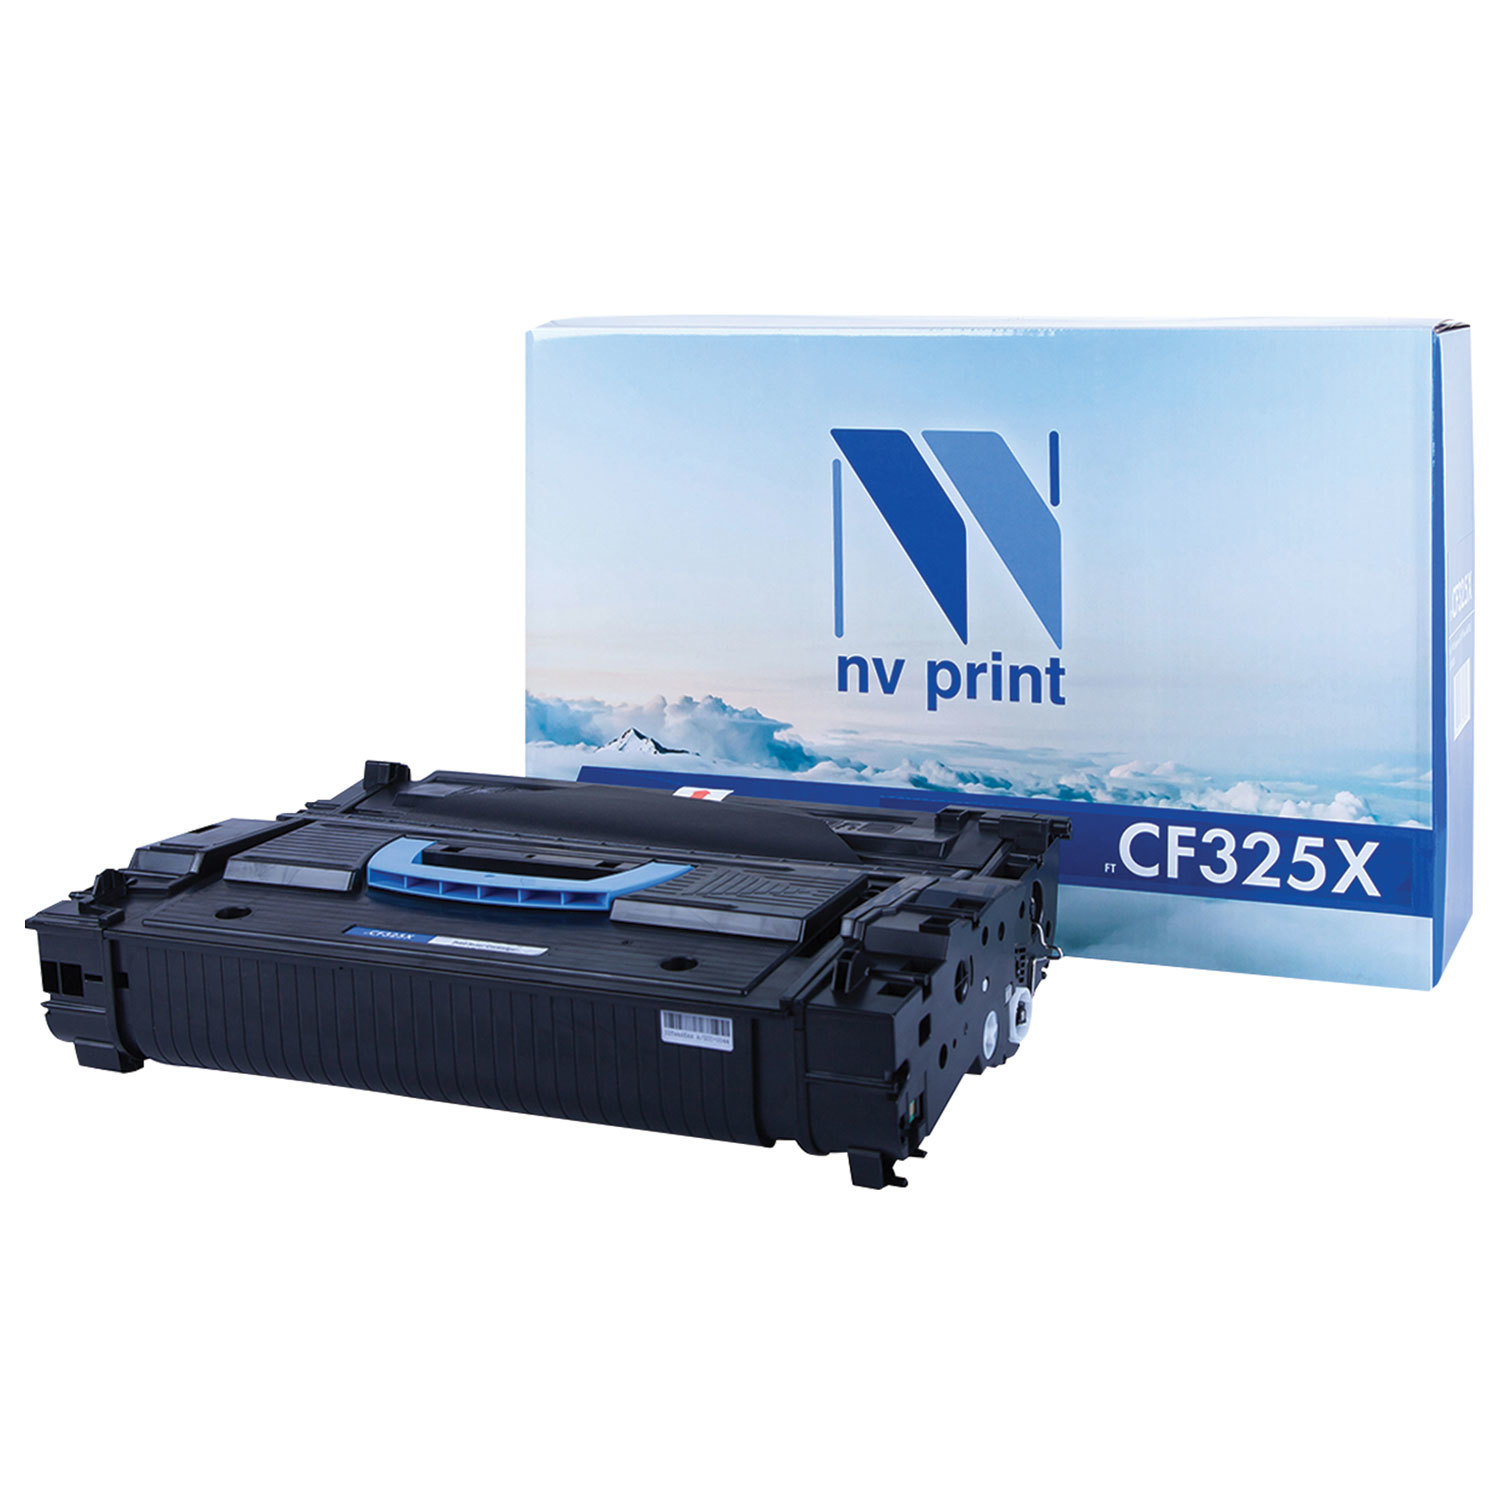  NV PRINT NV-CF325X